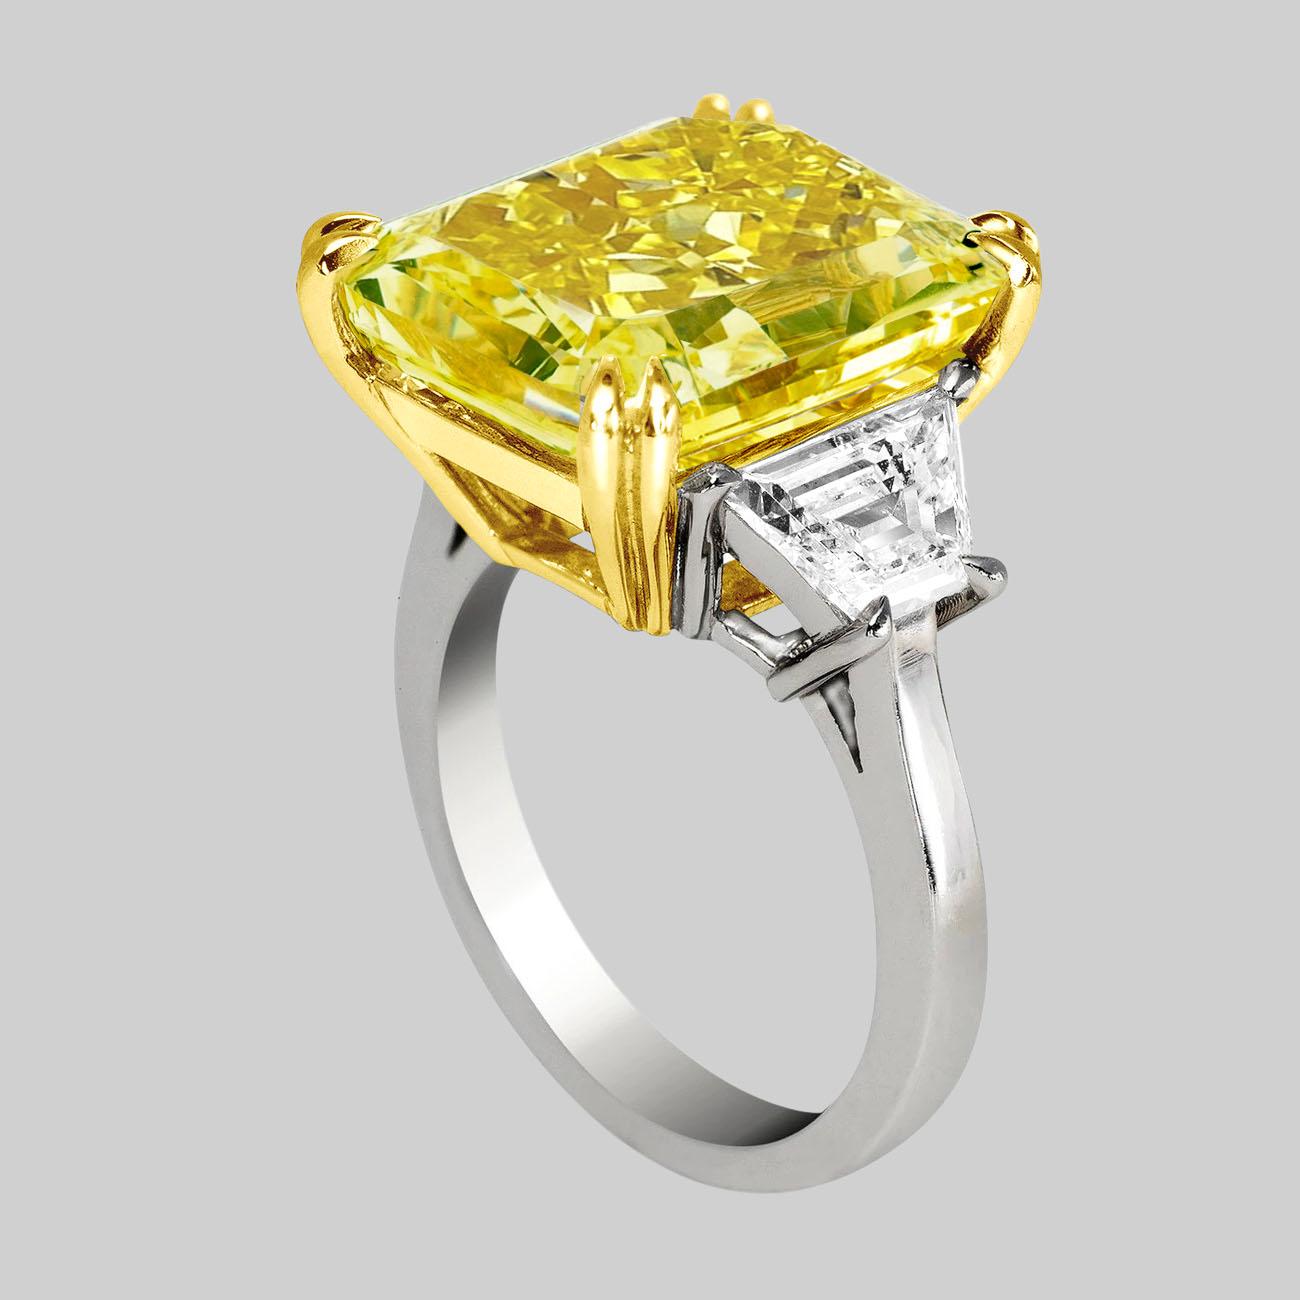 Cette magnifique bague est ornée d'un brillant jaune VIVID de 23 carats.  Diamant taille coussin flanqué de diamants blancs taille trapézoïdale 

Voir les photos pour plus de détails. (voir la photo du certificat pour des informations plus